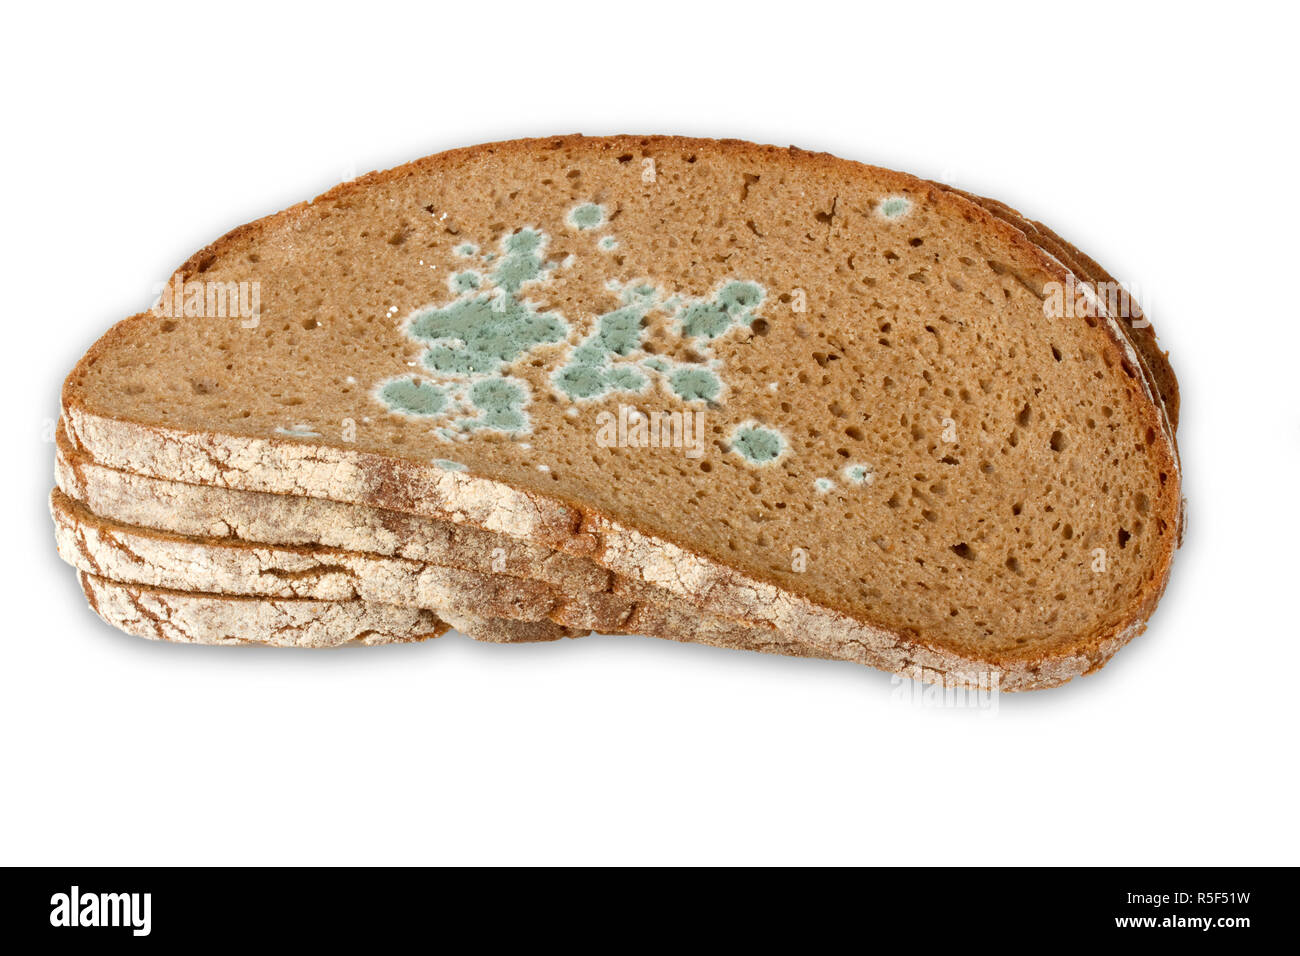 moldy-bread-R5F51W.jpg